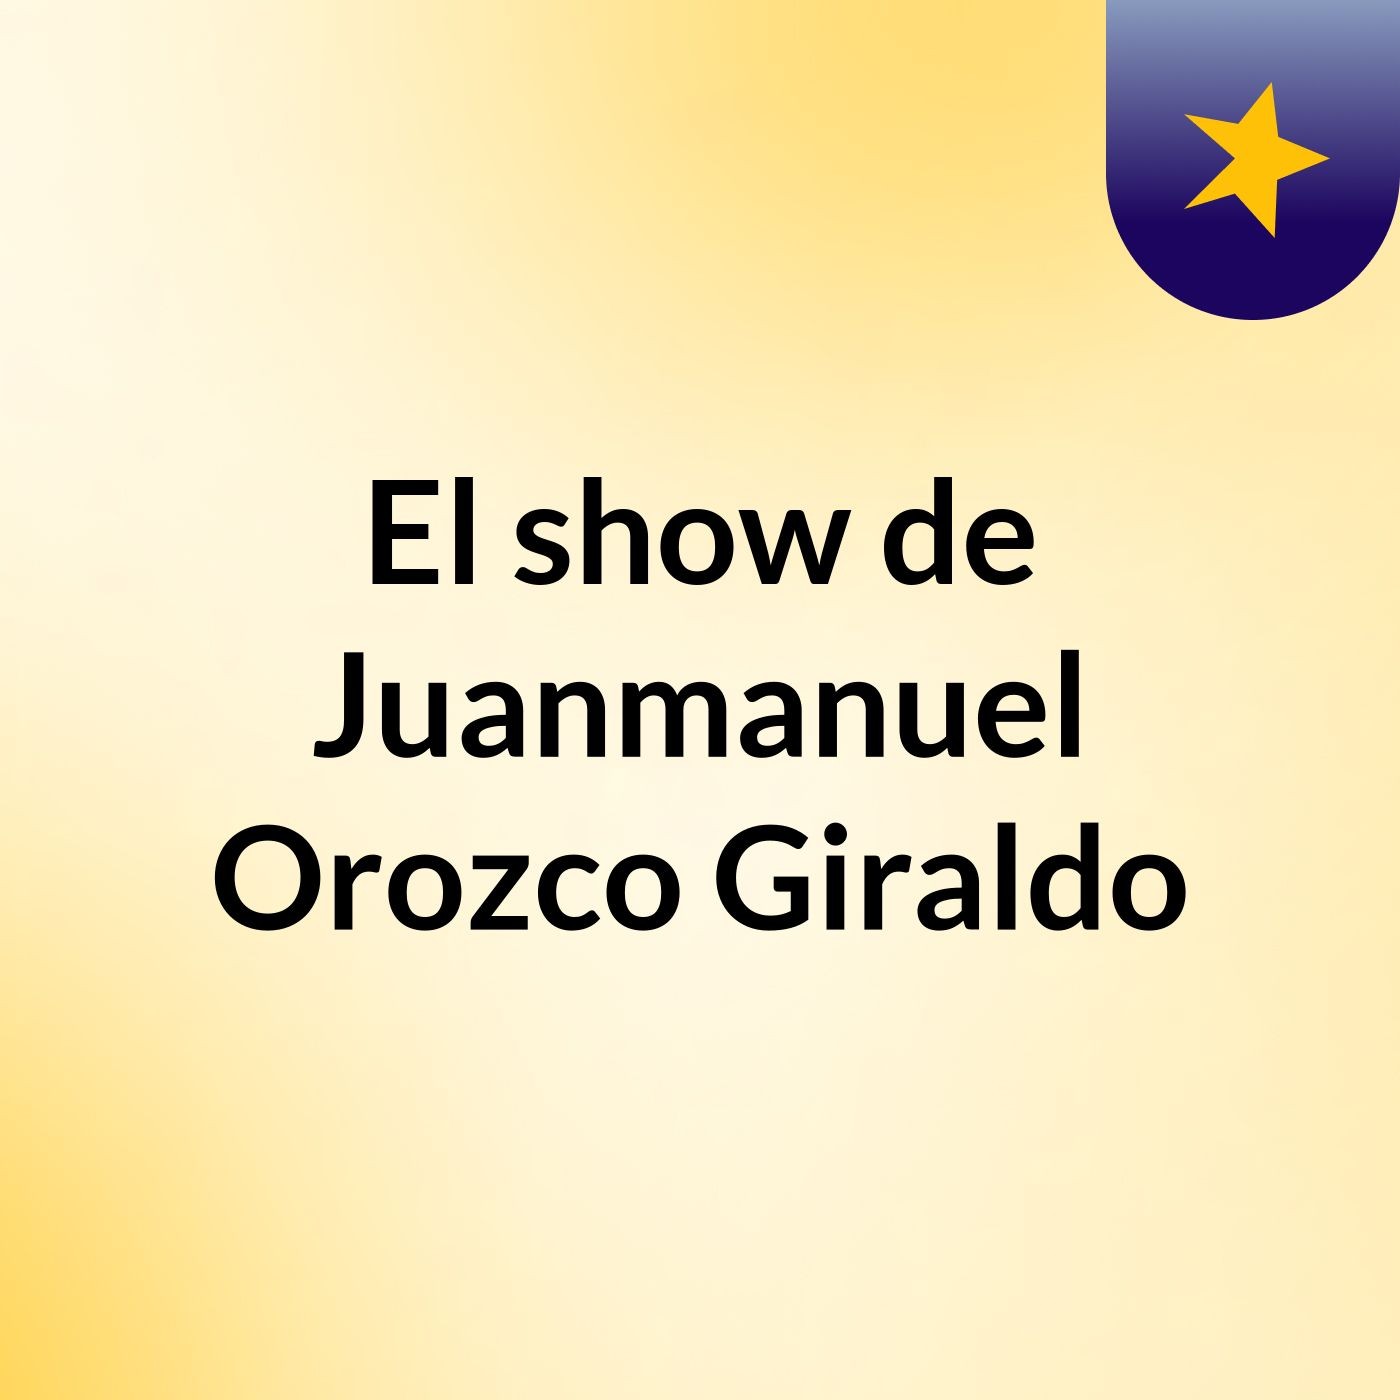 El show de Juanmanuel Orozco Giraldo